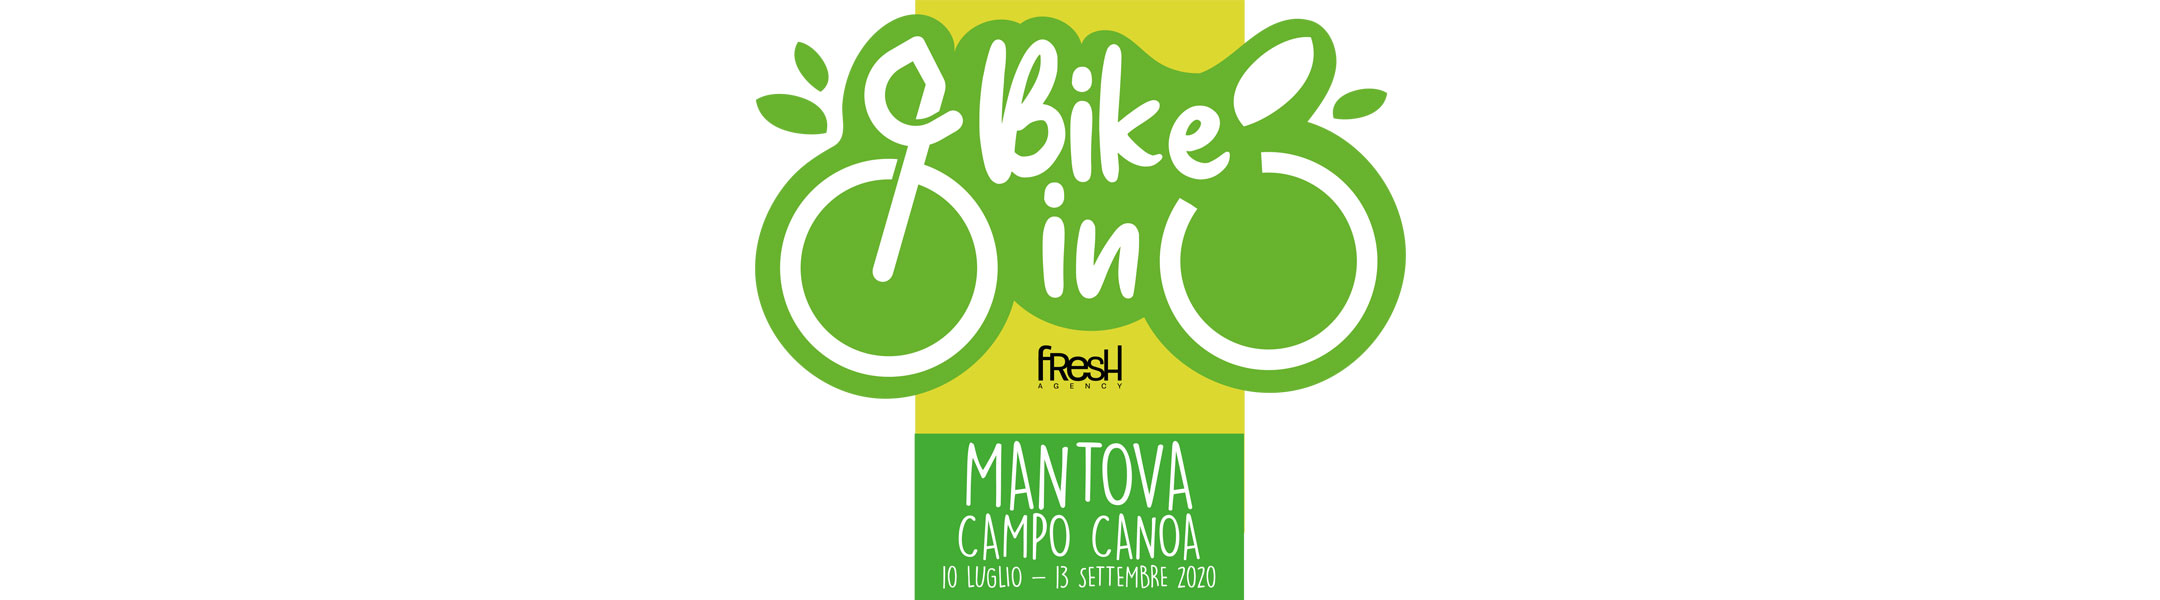 Mantova - Arena Bike-In